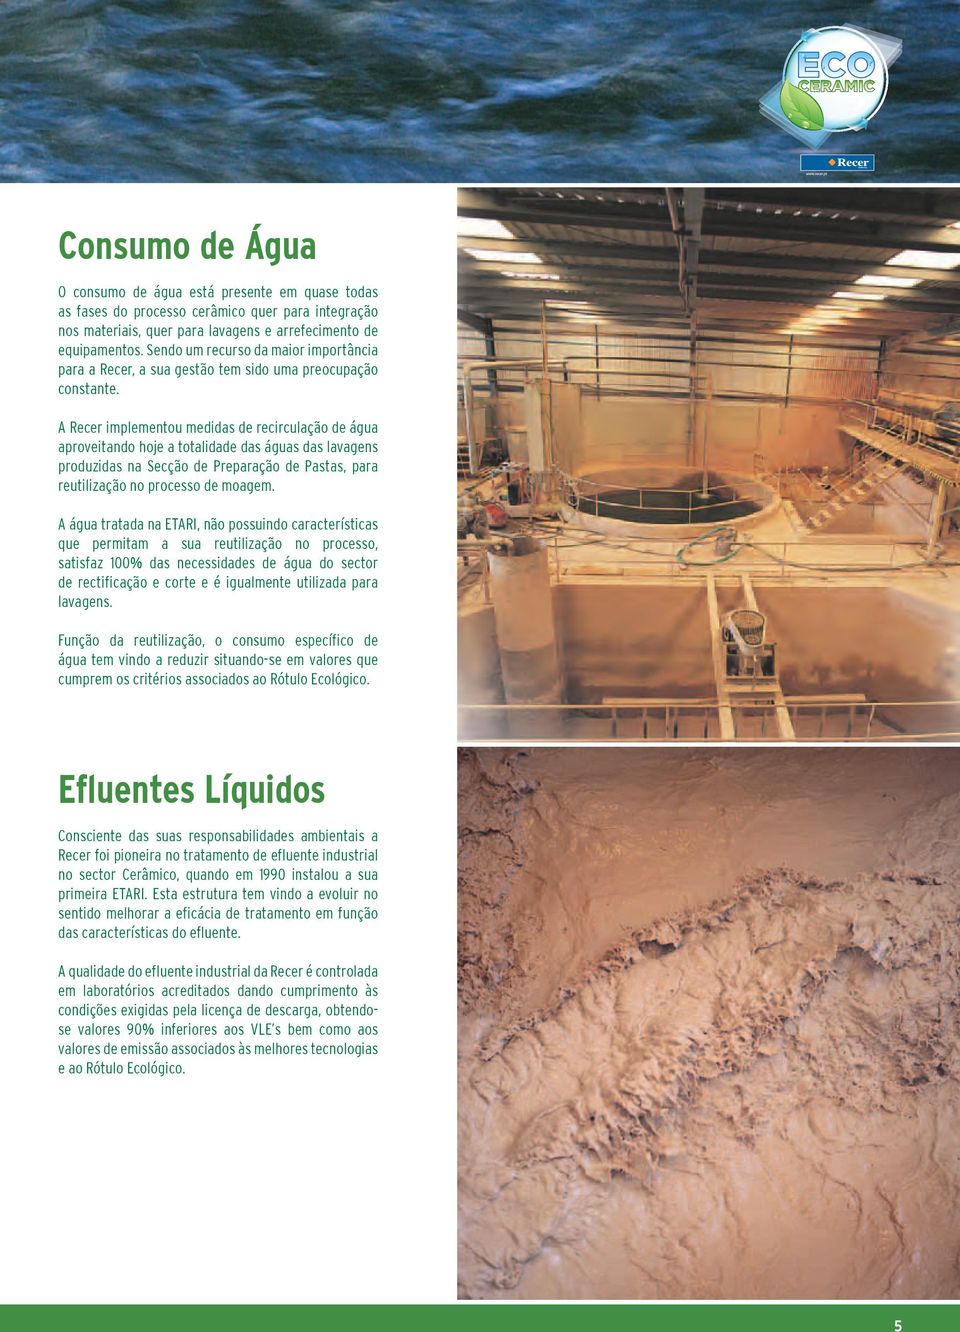 A Recer implementou medidas de recirculação de água aproveitando hoje a totalidade das águas das lavagens produzidas na Secção de Preparação de Pastas, para reutilização no processo de moagem.